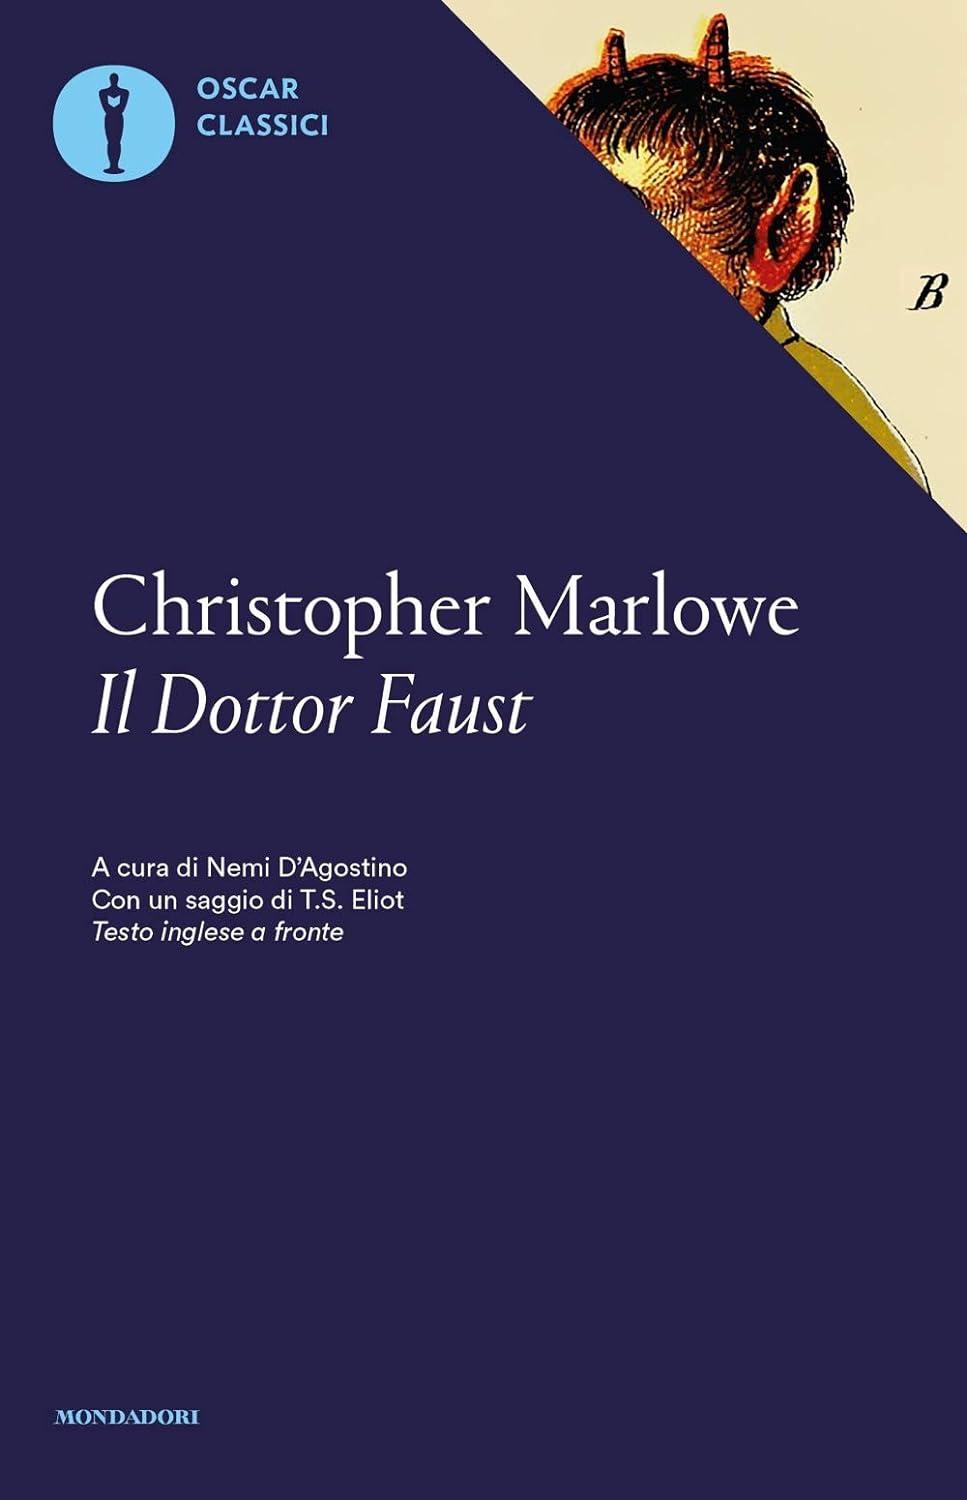 Libro "Il dottor Faust" di Christopher Marlowe